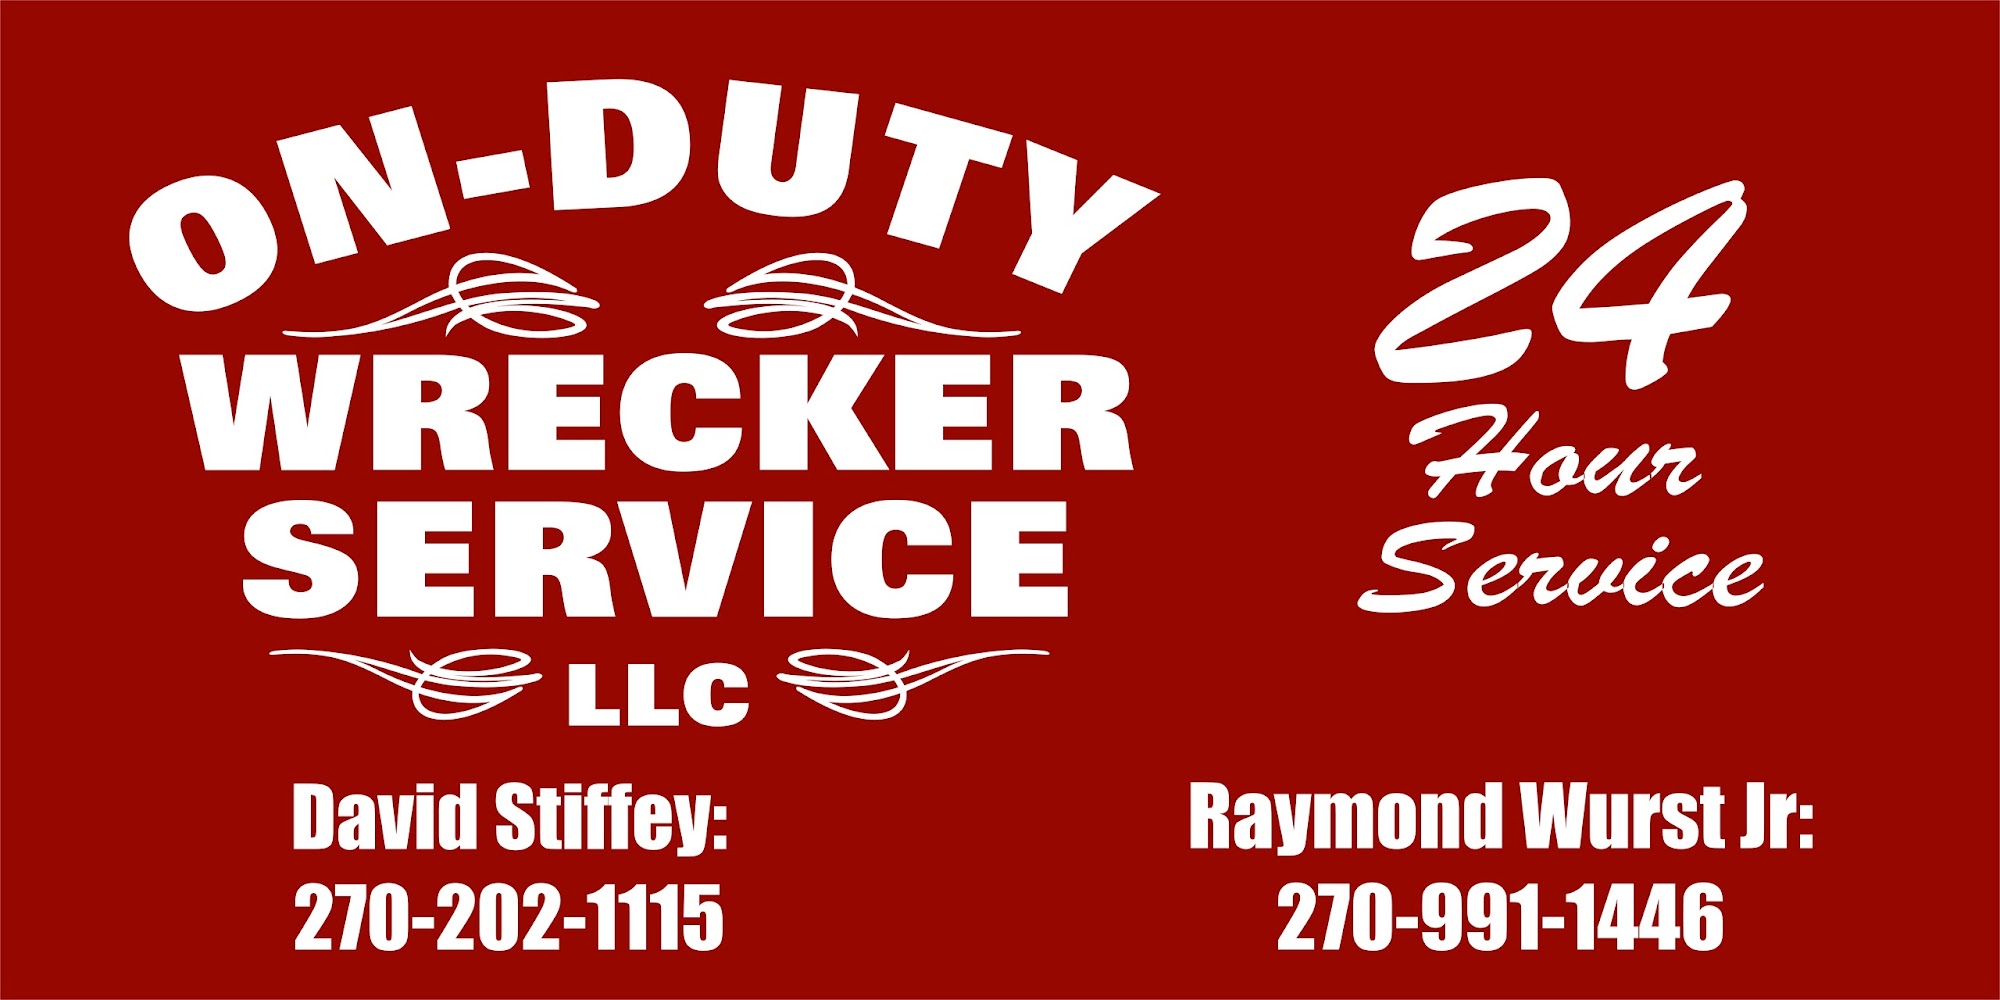 On Duty Wrecker Service, LLC 8203, 214 Beeler Ave, Smiths Grove Kentucky 42171